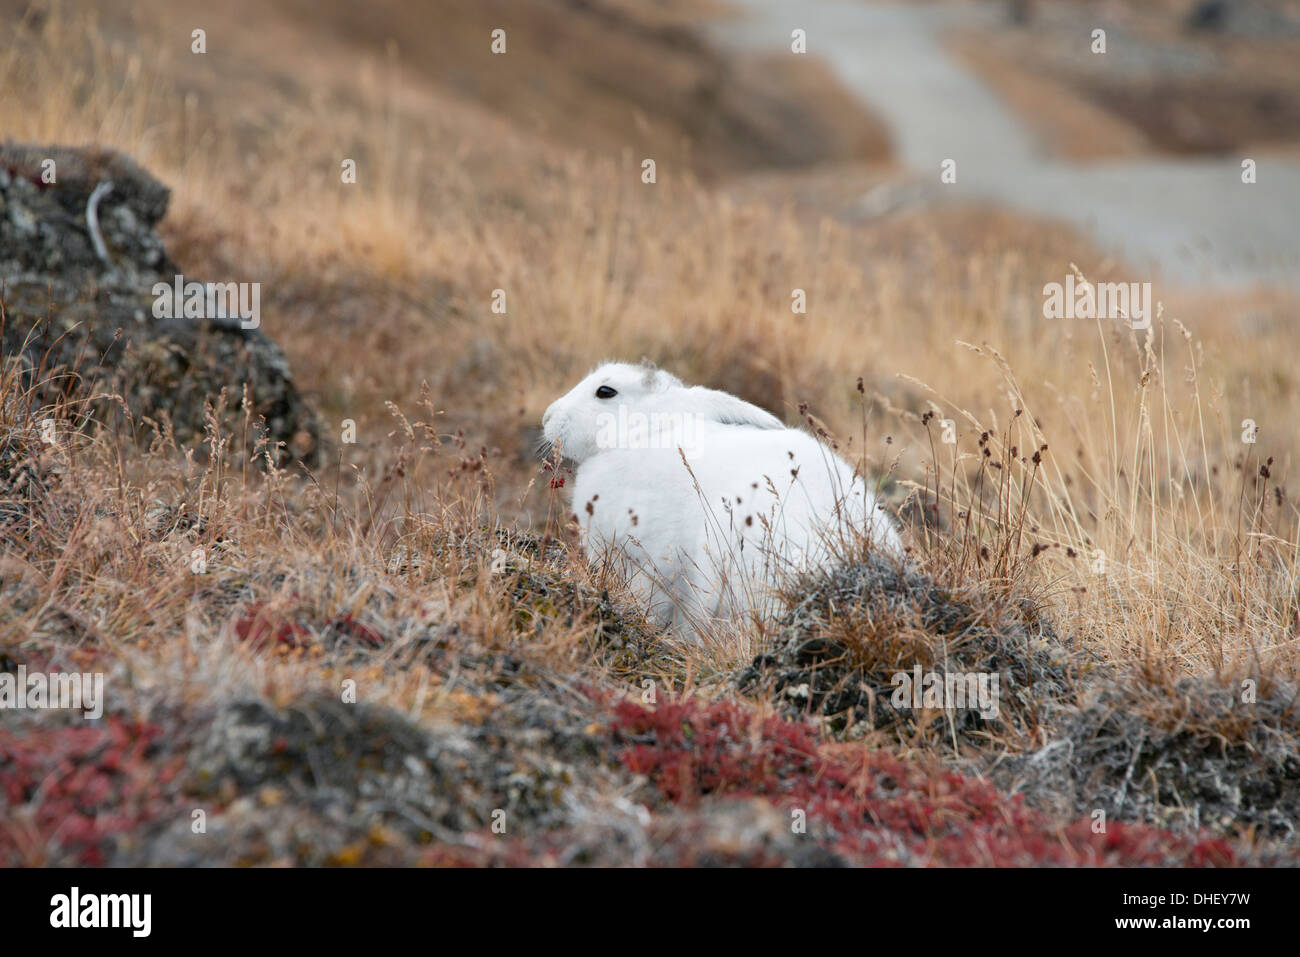 Grönland, Qeqqata Gemeinde, Kangerlussuaq (große Fjord) aka Sondrestrom. Schneehase (Lepus Arcticus) im Herbst Lebensraum. Stockfoto